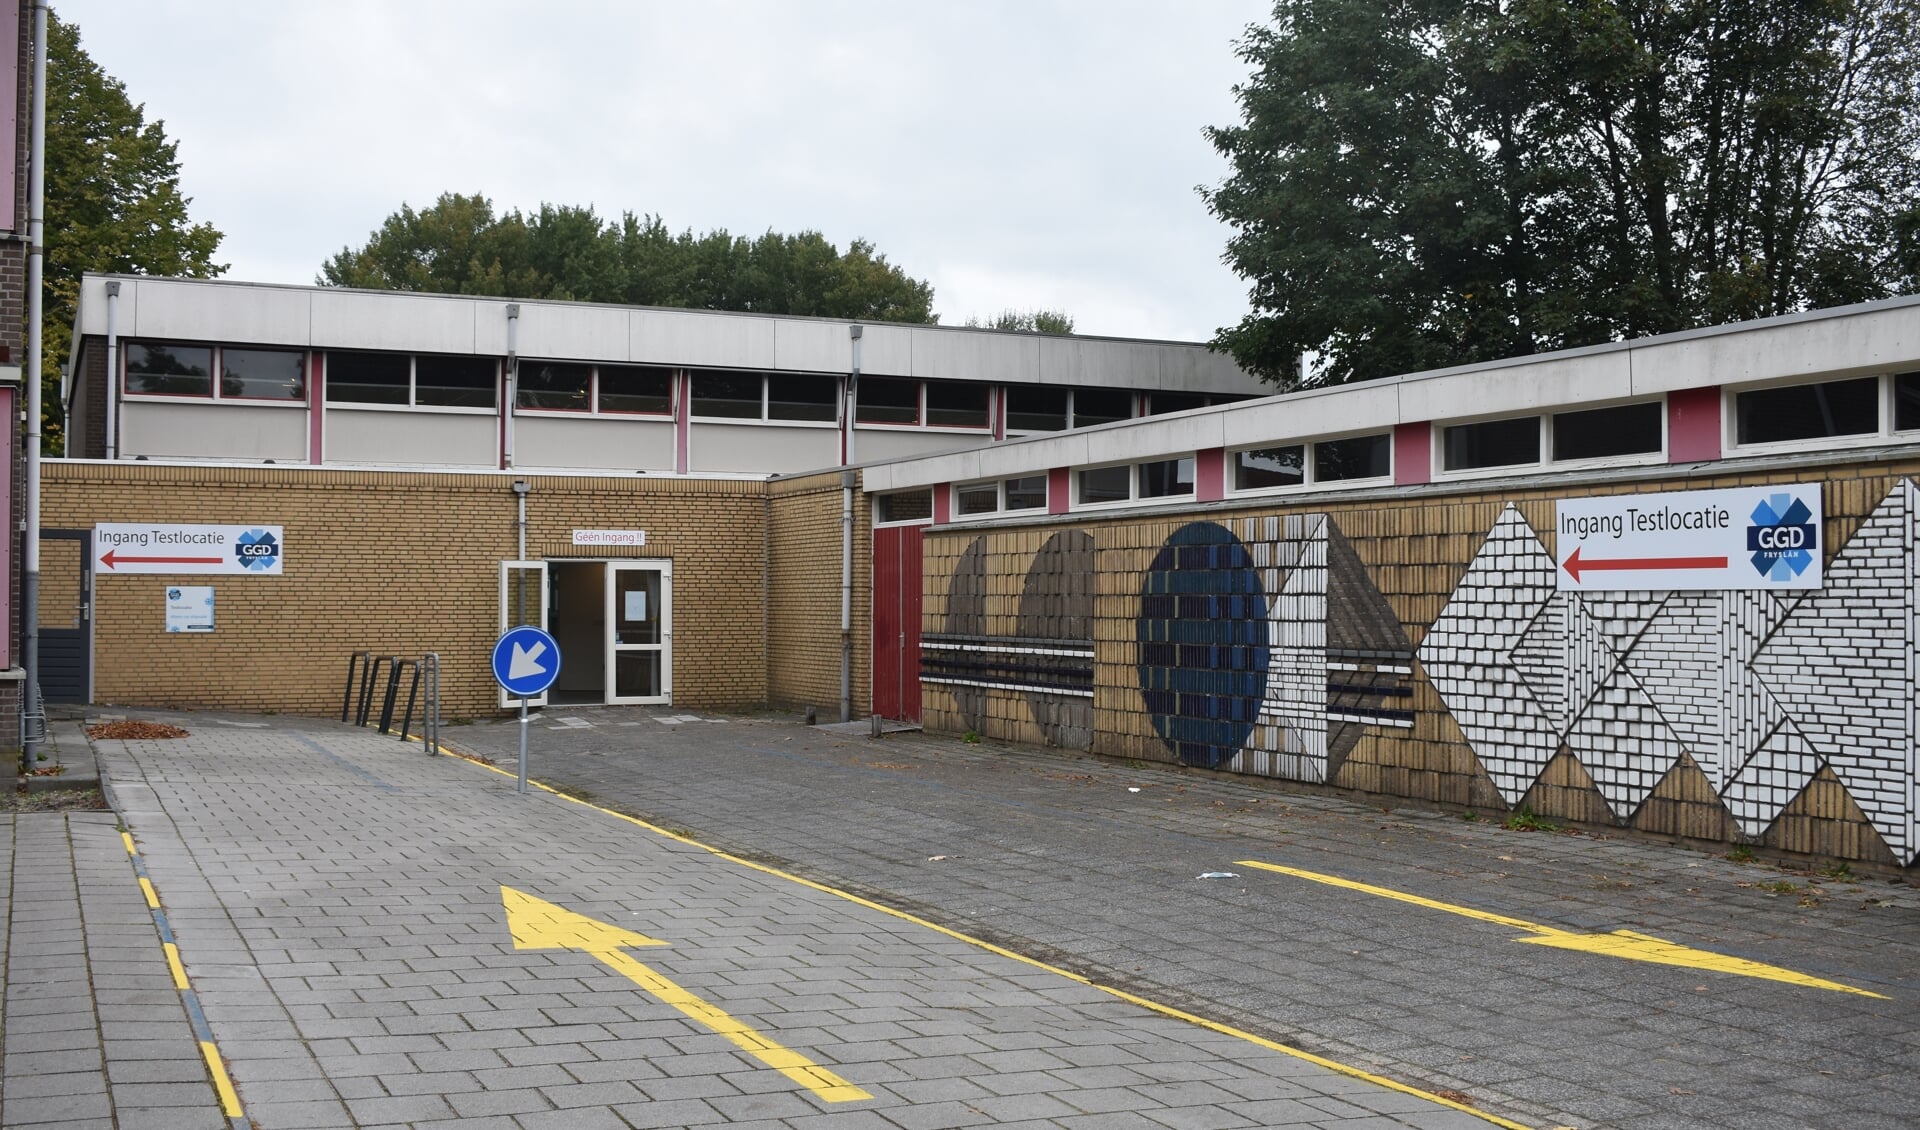 Eikesingel 62 in Drachten, waar voorheen het Gomaruscollege gevestigd was, komt wellicht in aanmerking voor sloop en woningbouw. Recentelijk werd het bijgebouw gebruikt als GGD-testlocatie vanwege het coronavirus.